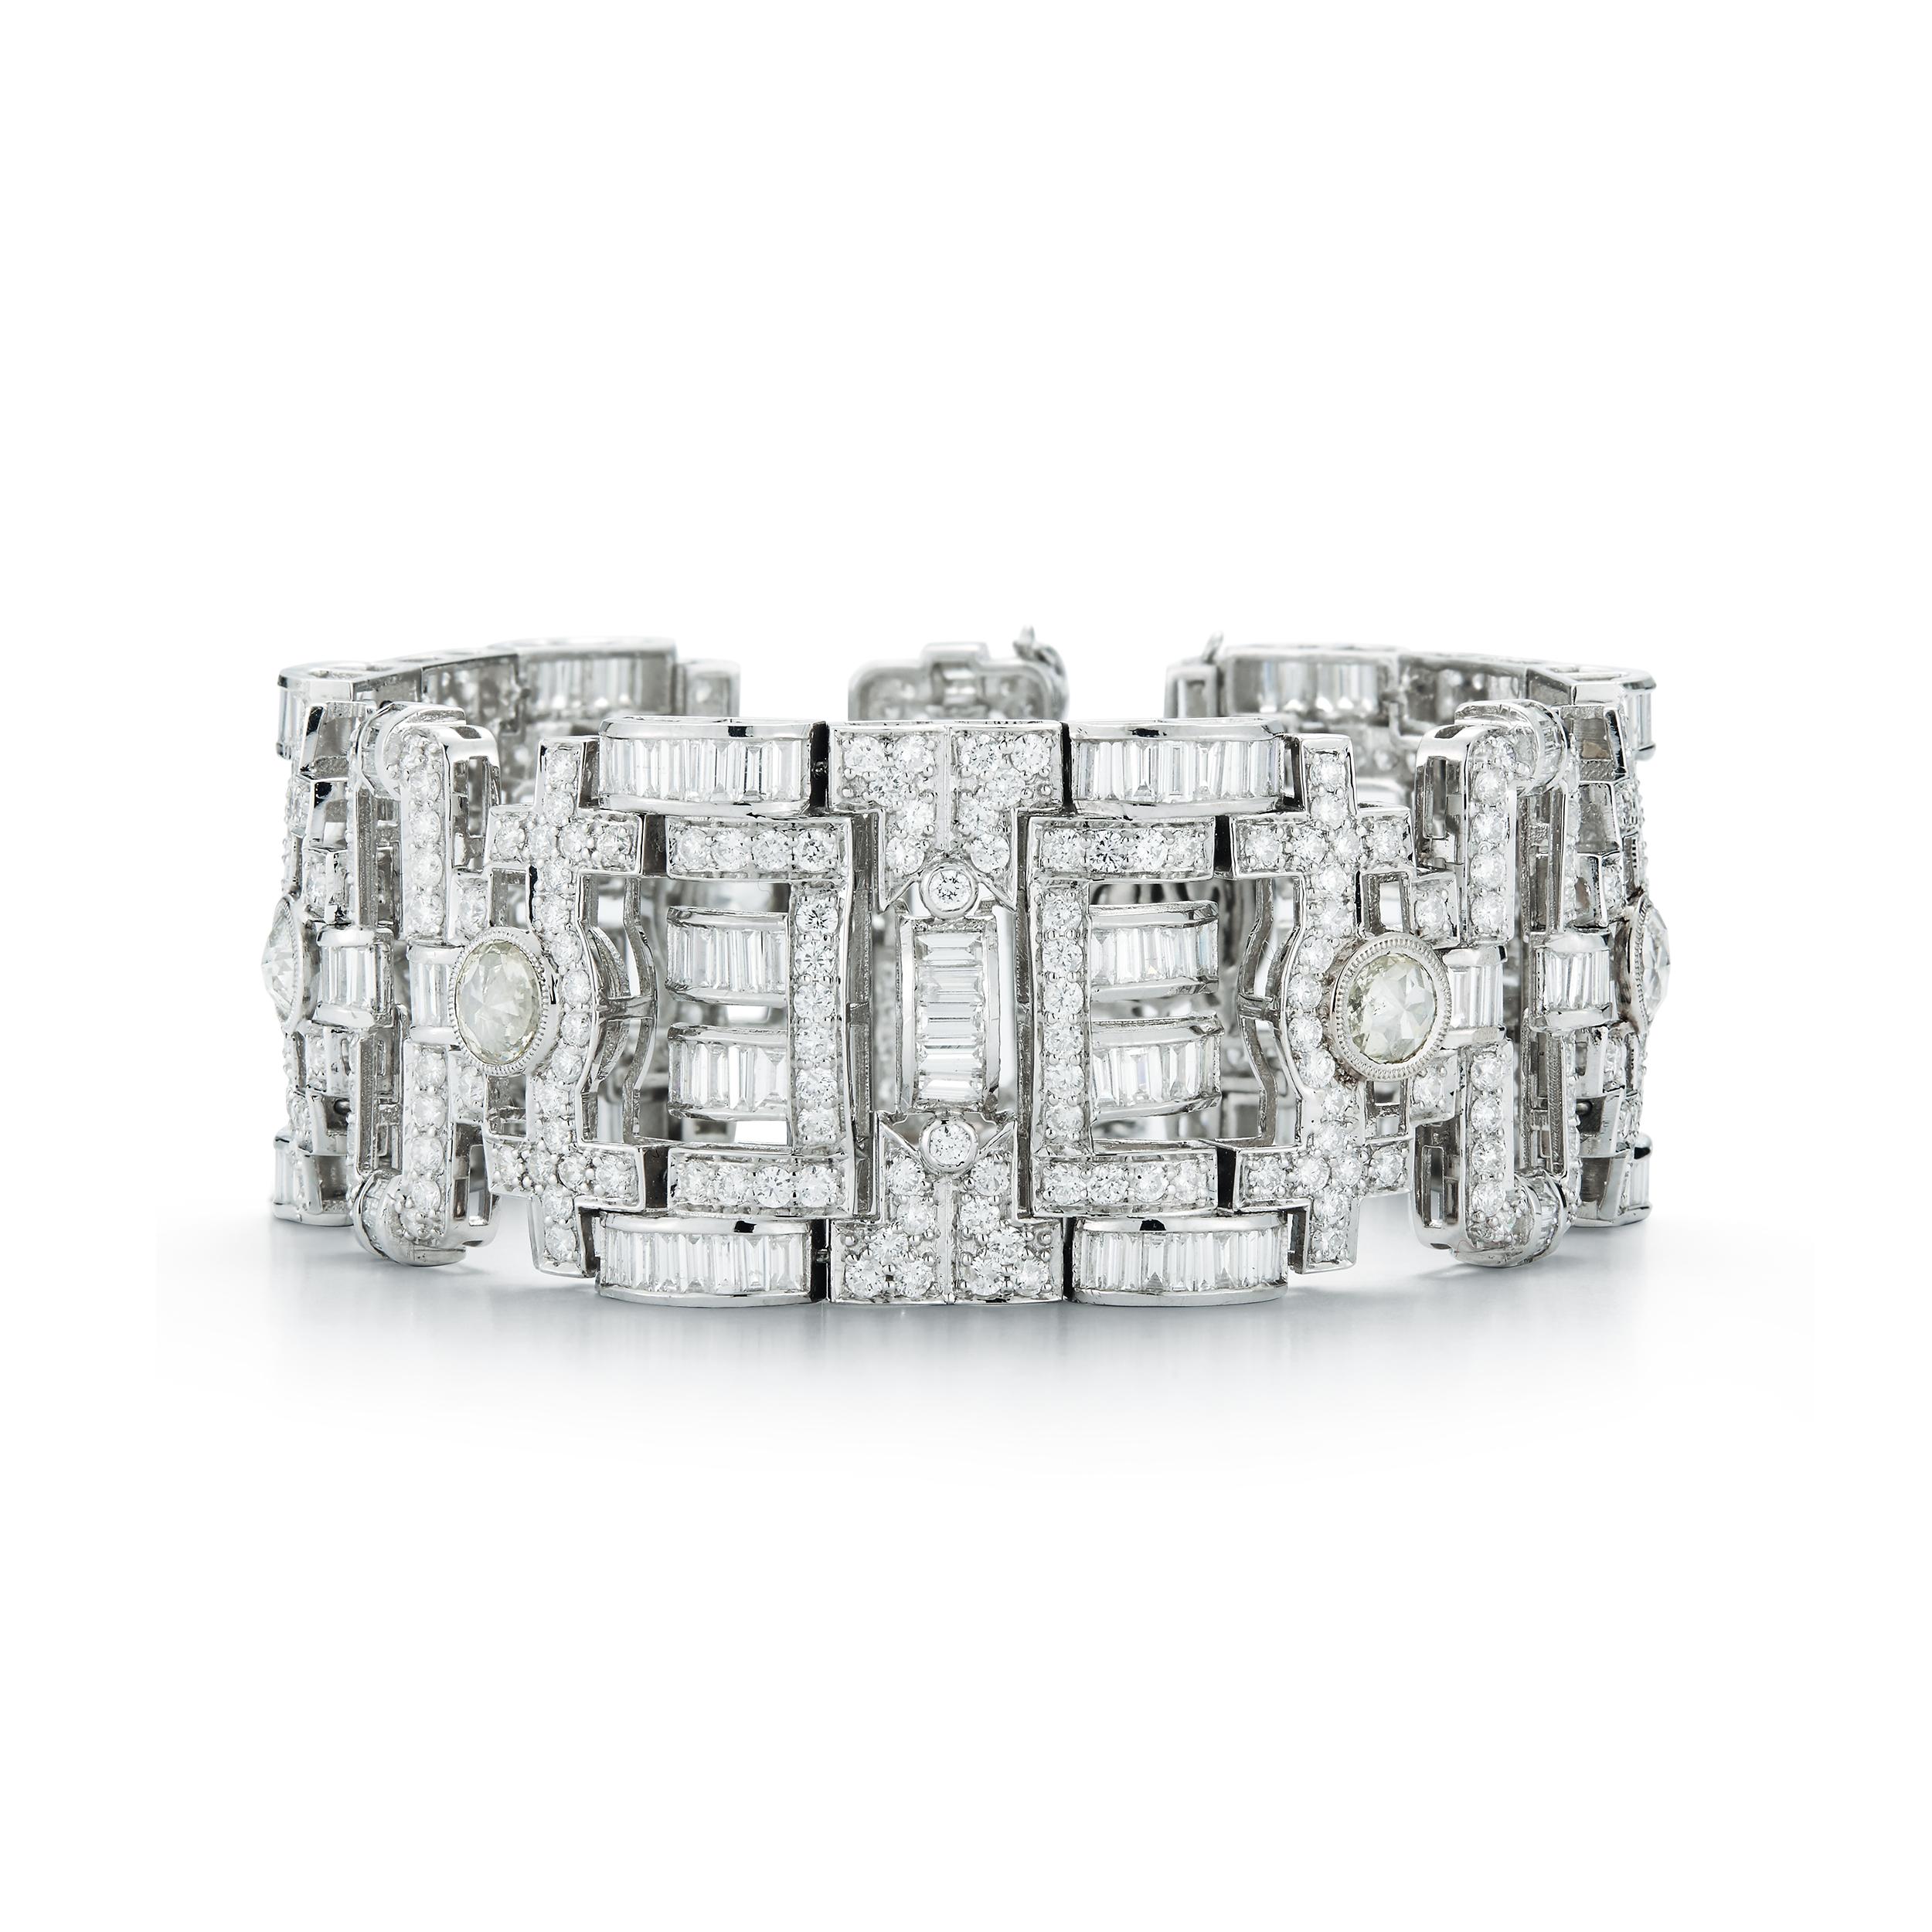 18K Weißgold Antik-Stil Diamant-Armband, mit 14,14 Karat runden Diamanten, 13,16C. von Baguettes Diamanten und sechs runden Diamanten Gewicht ca. 6,20C. Gesamtgewicht der Diamanten 33,50C.